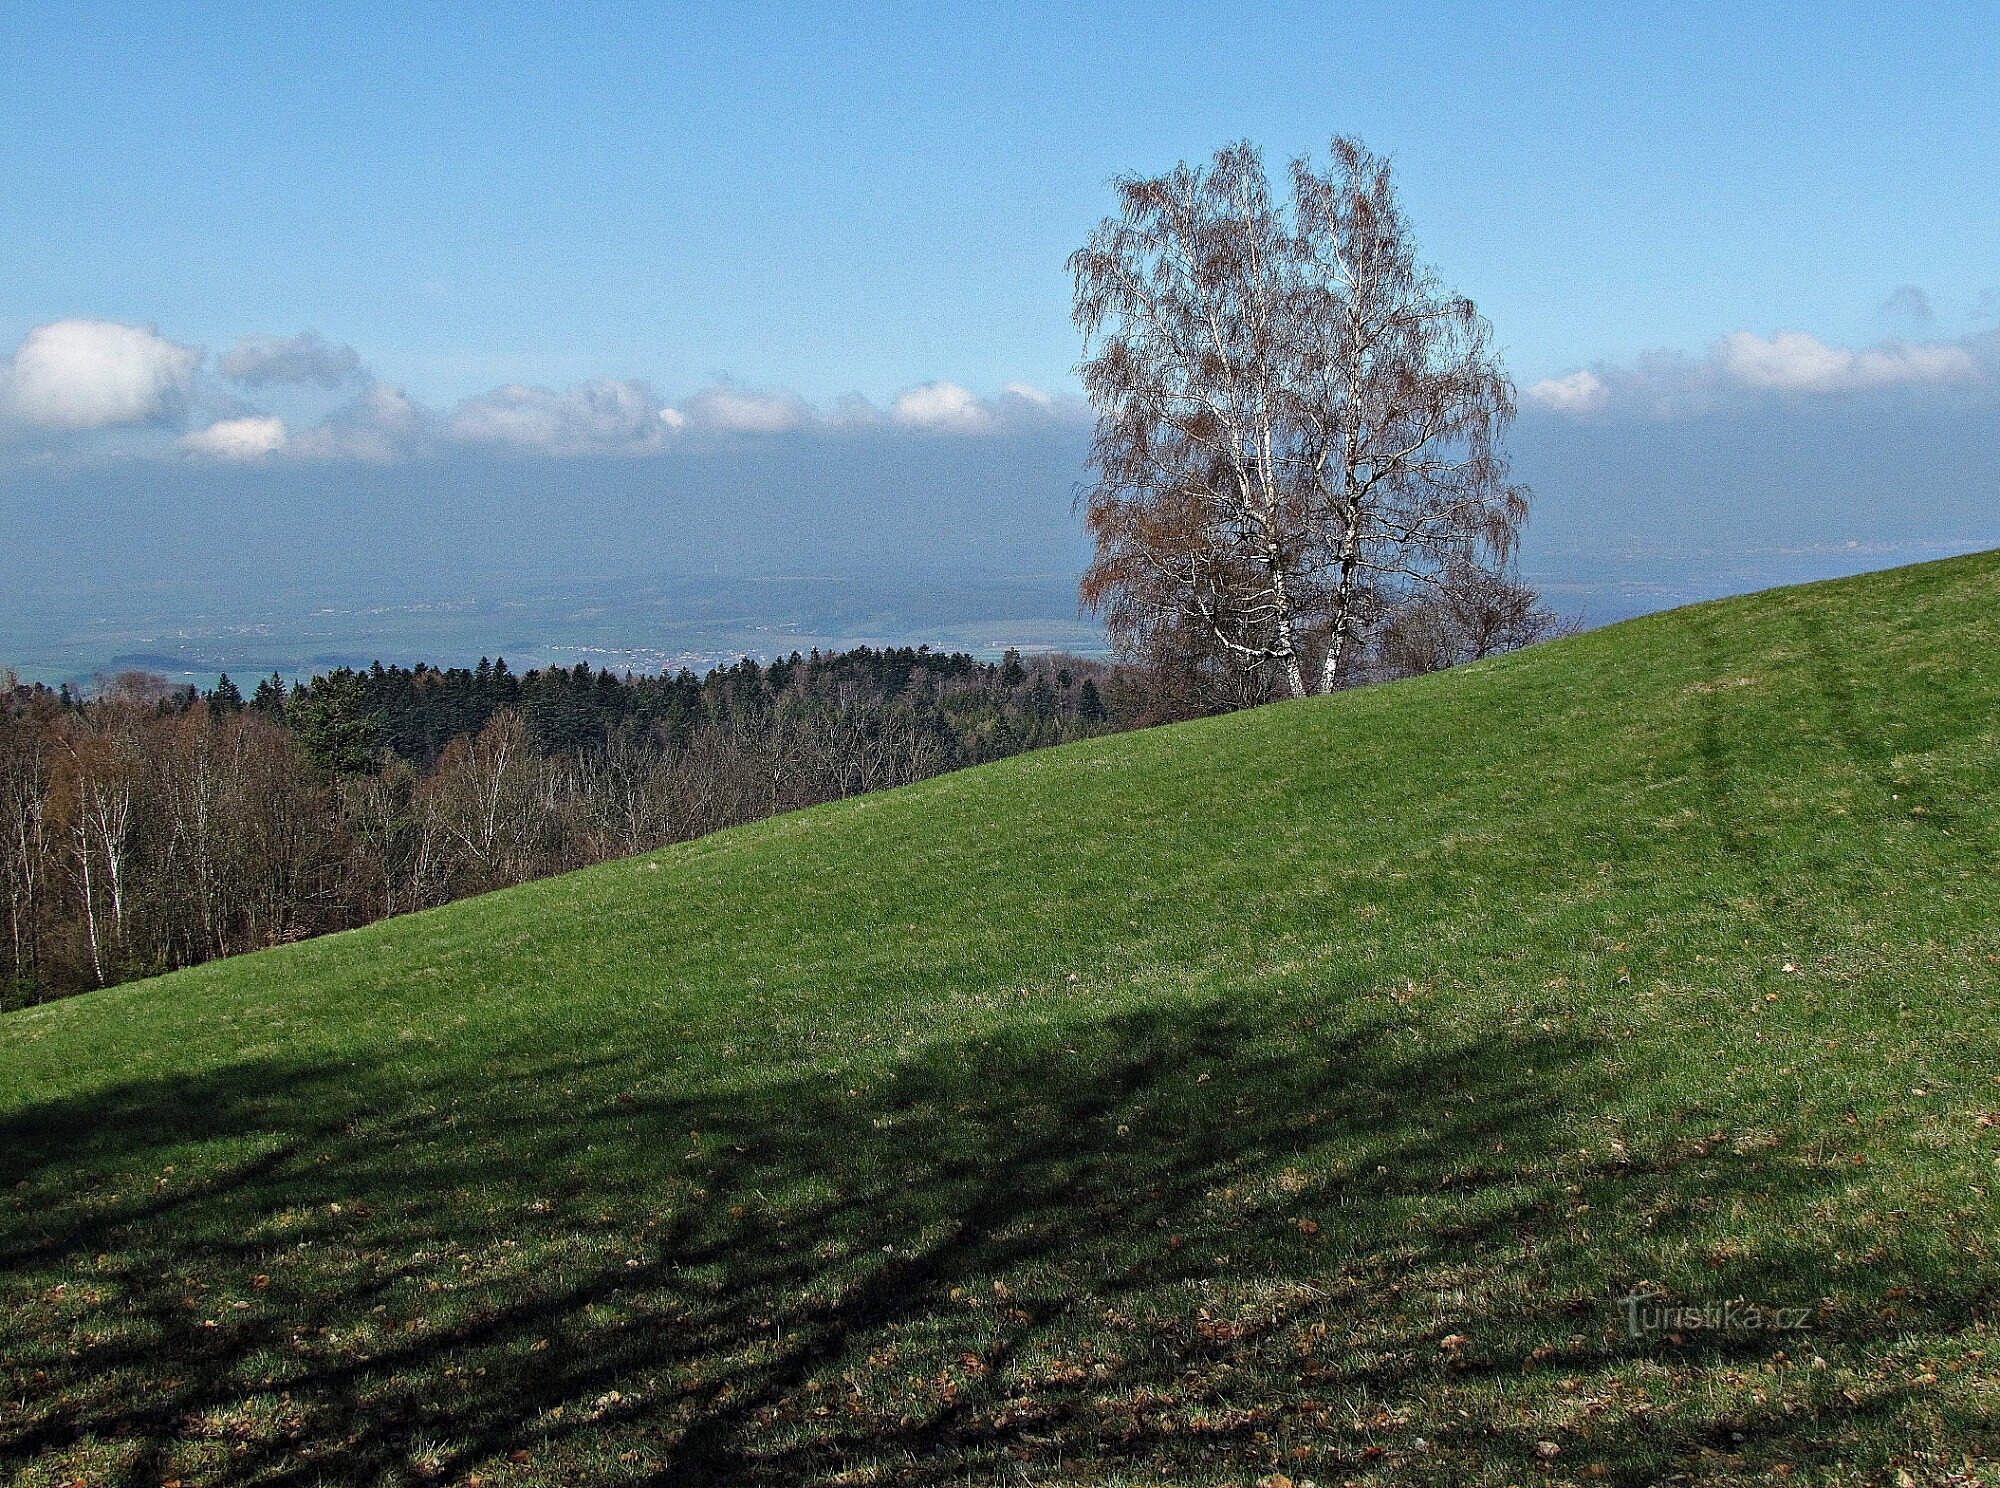 Upper Skalný and views